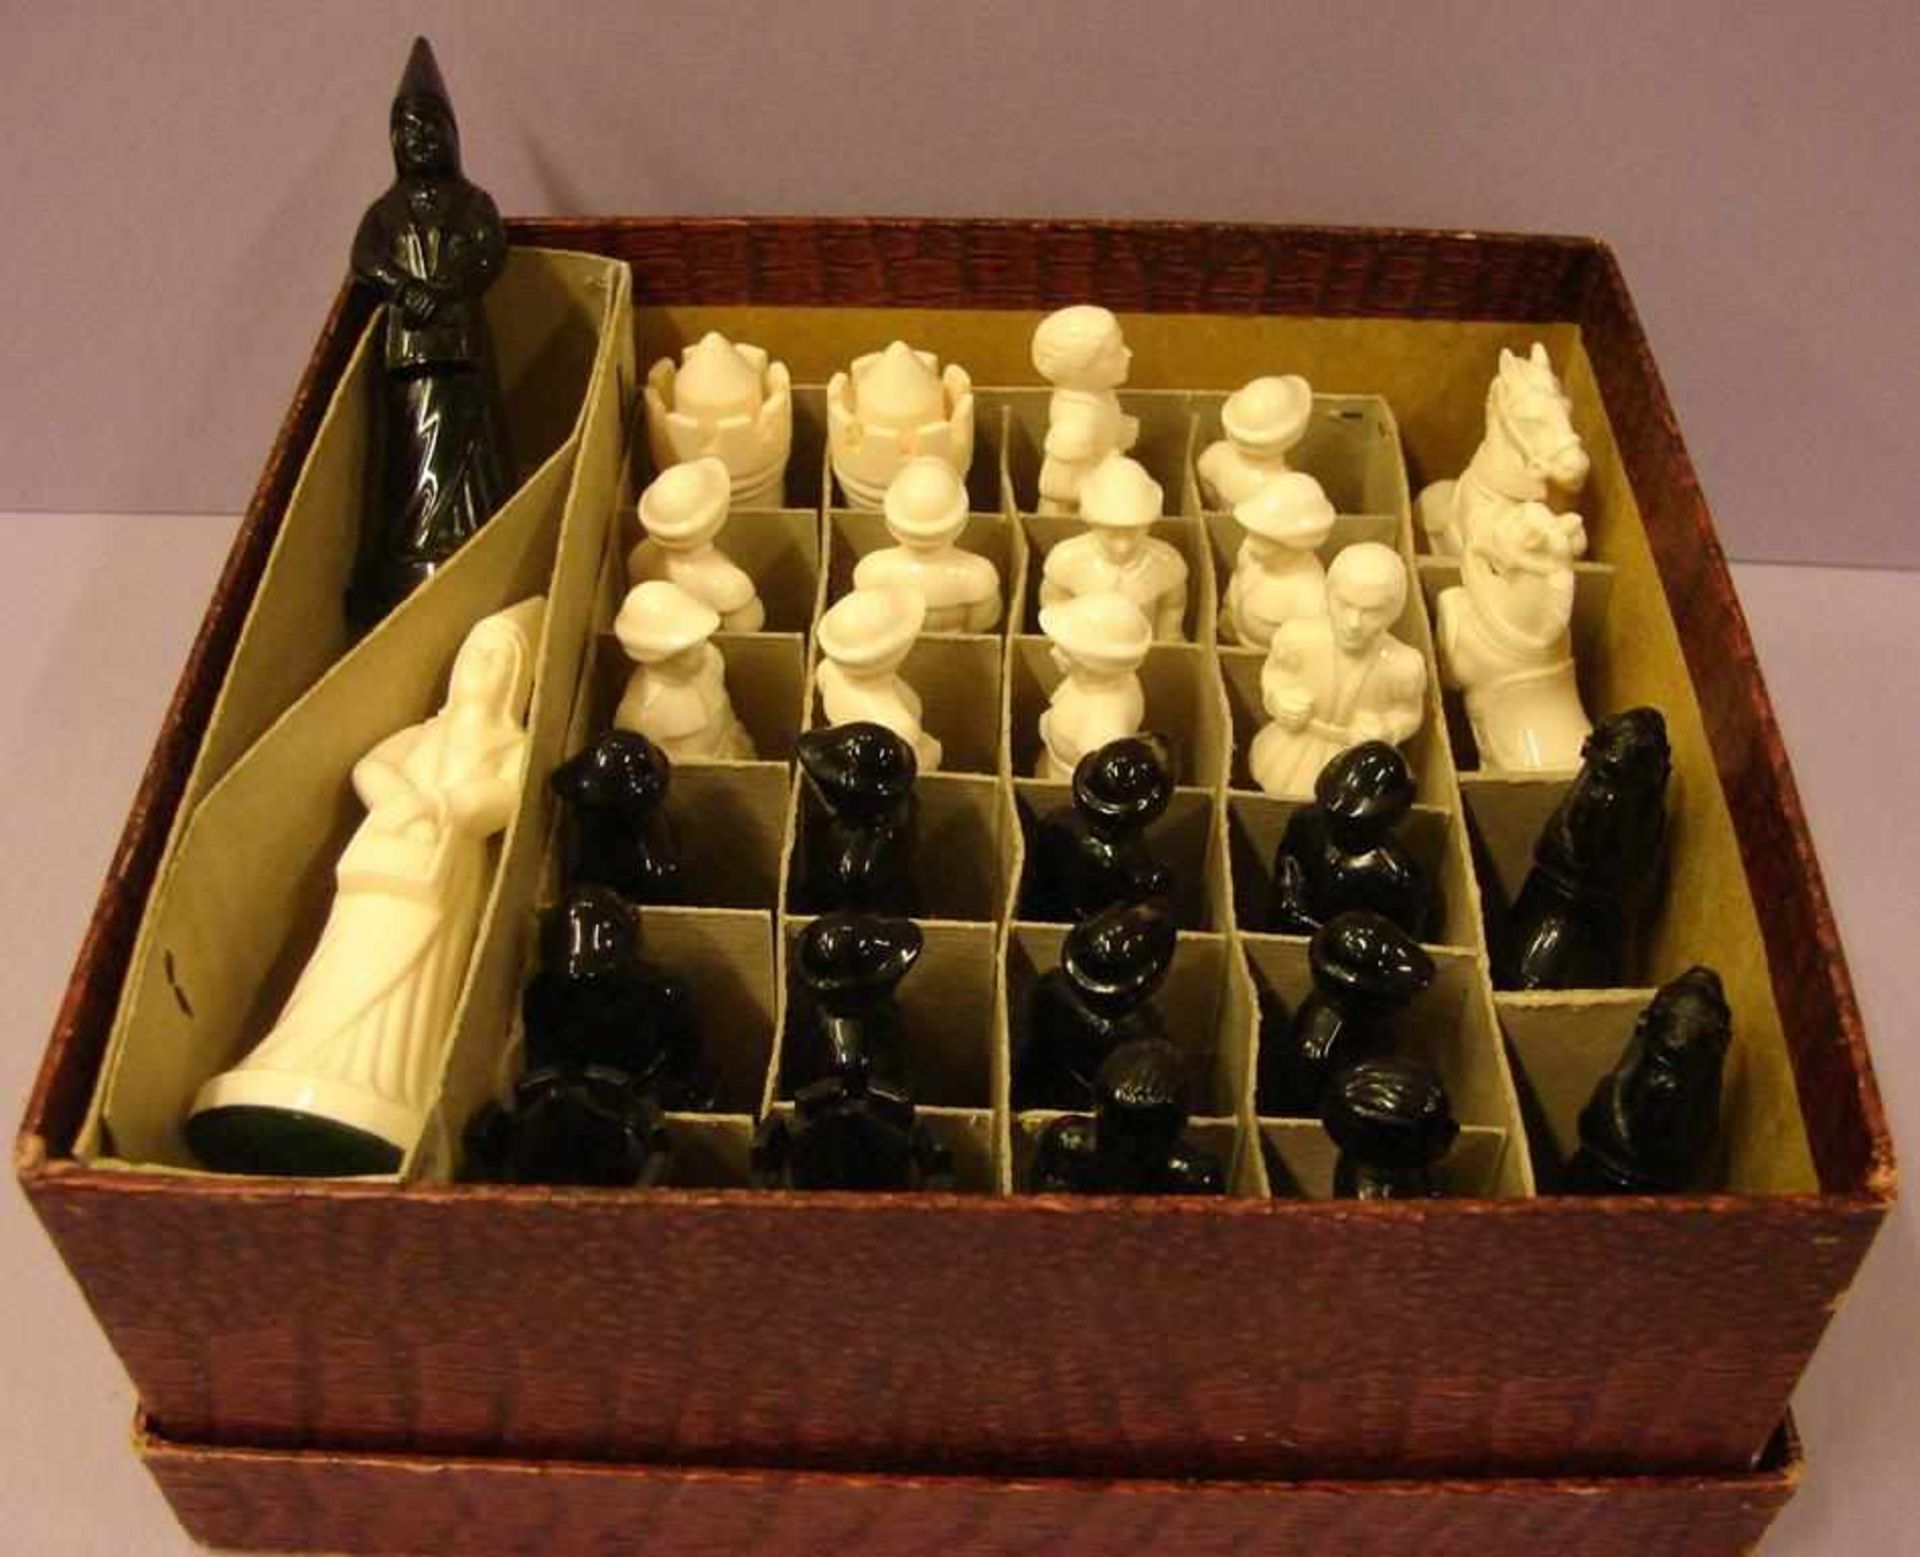 Schachfiguren im Kasten, aufwendig gearbeitet